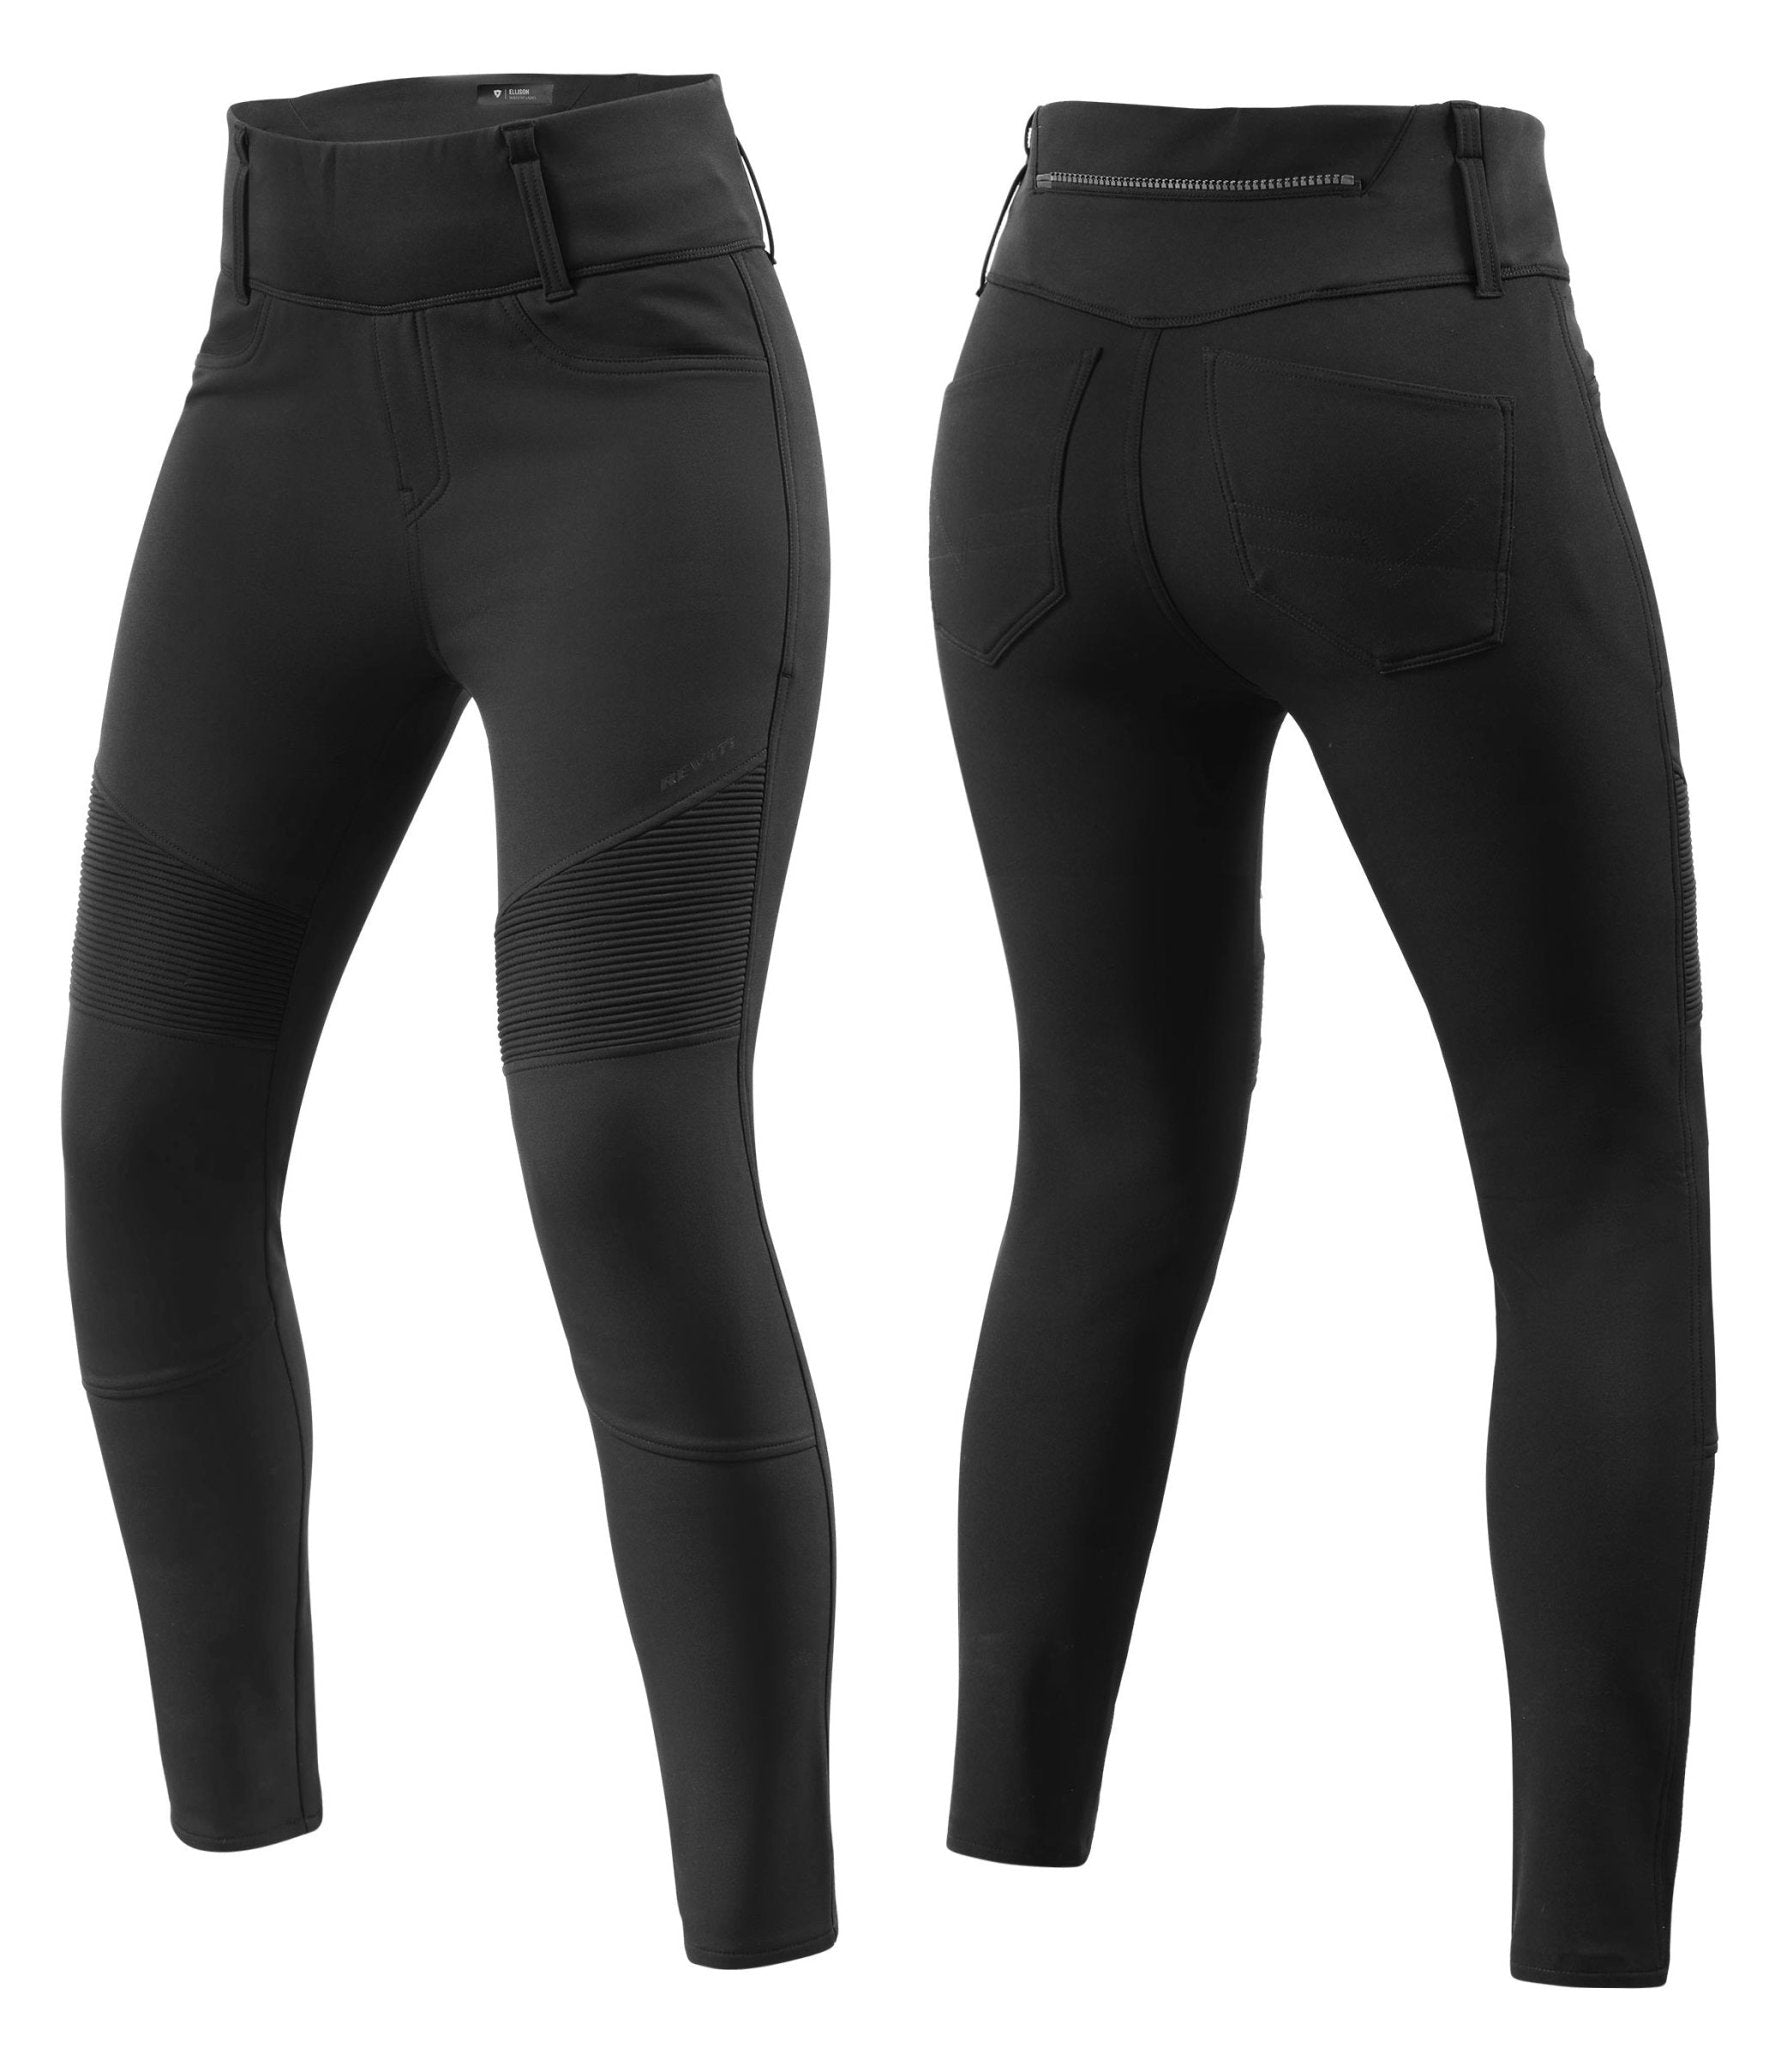 REV&#39;IT! | Trousers Ellison Ladies SK - Black - Women&#39;s Pants - Peak Moto